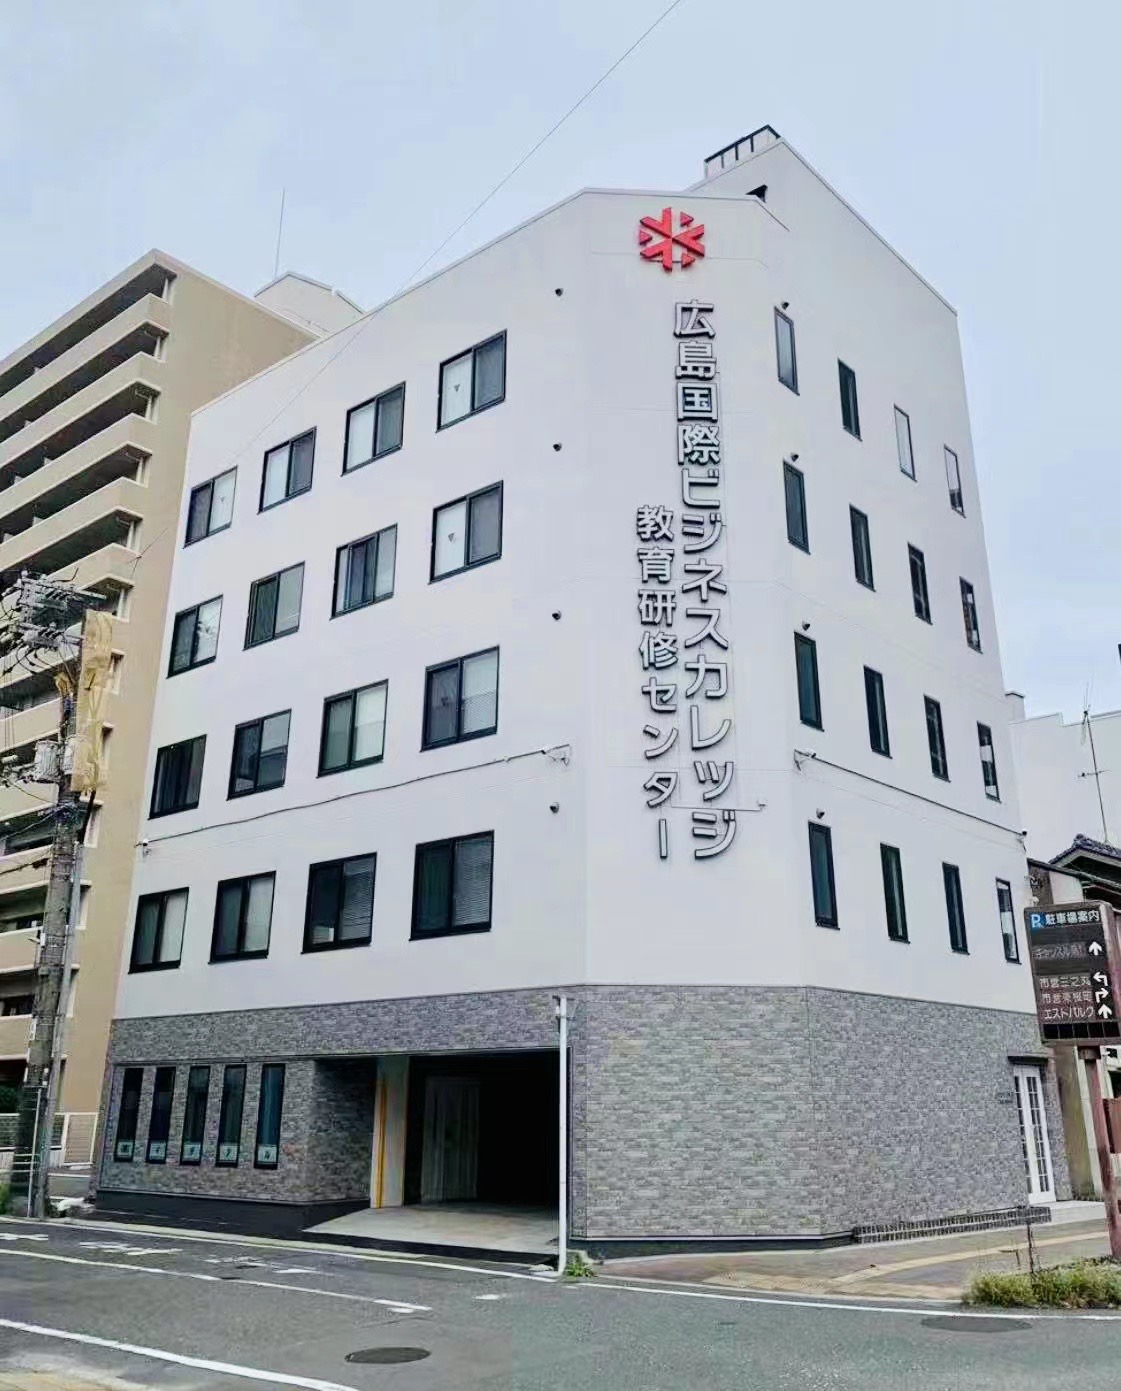 专门学校 广岛国际商务学院 研修中心